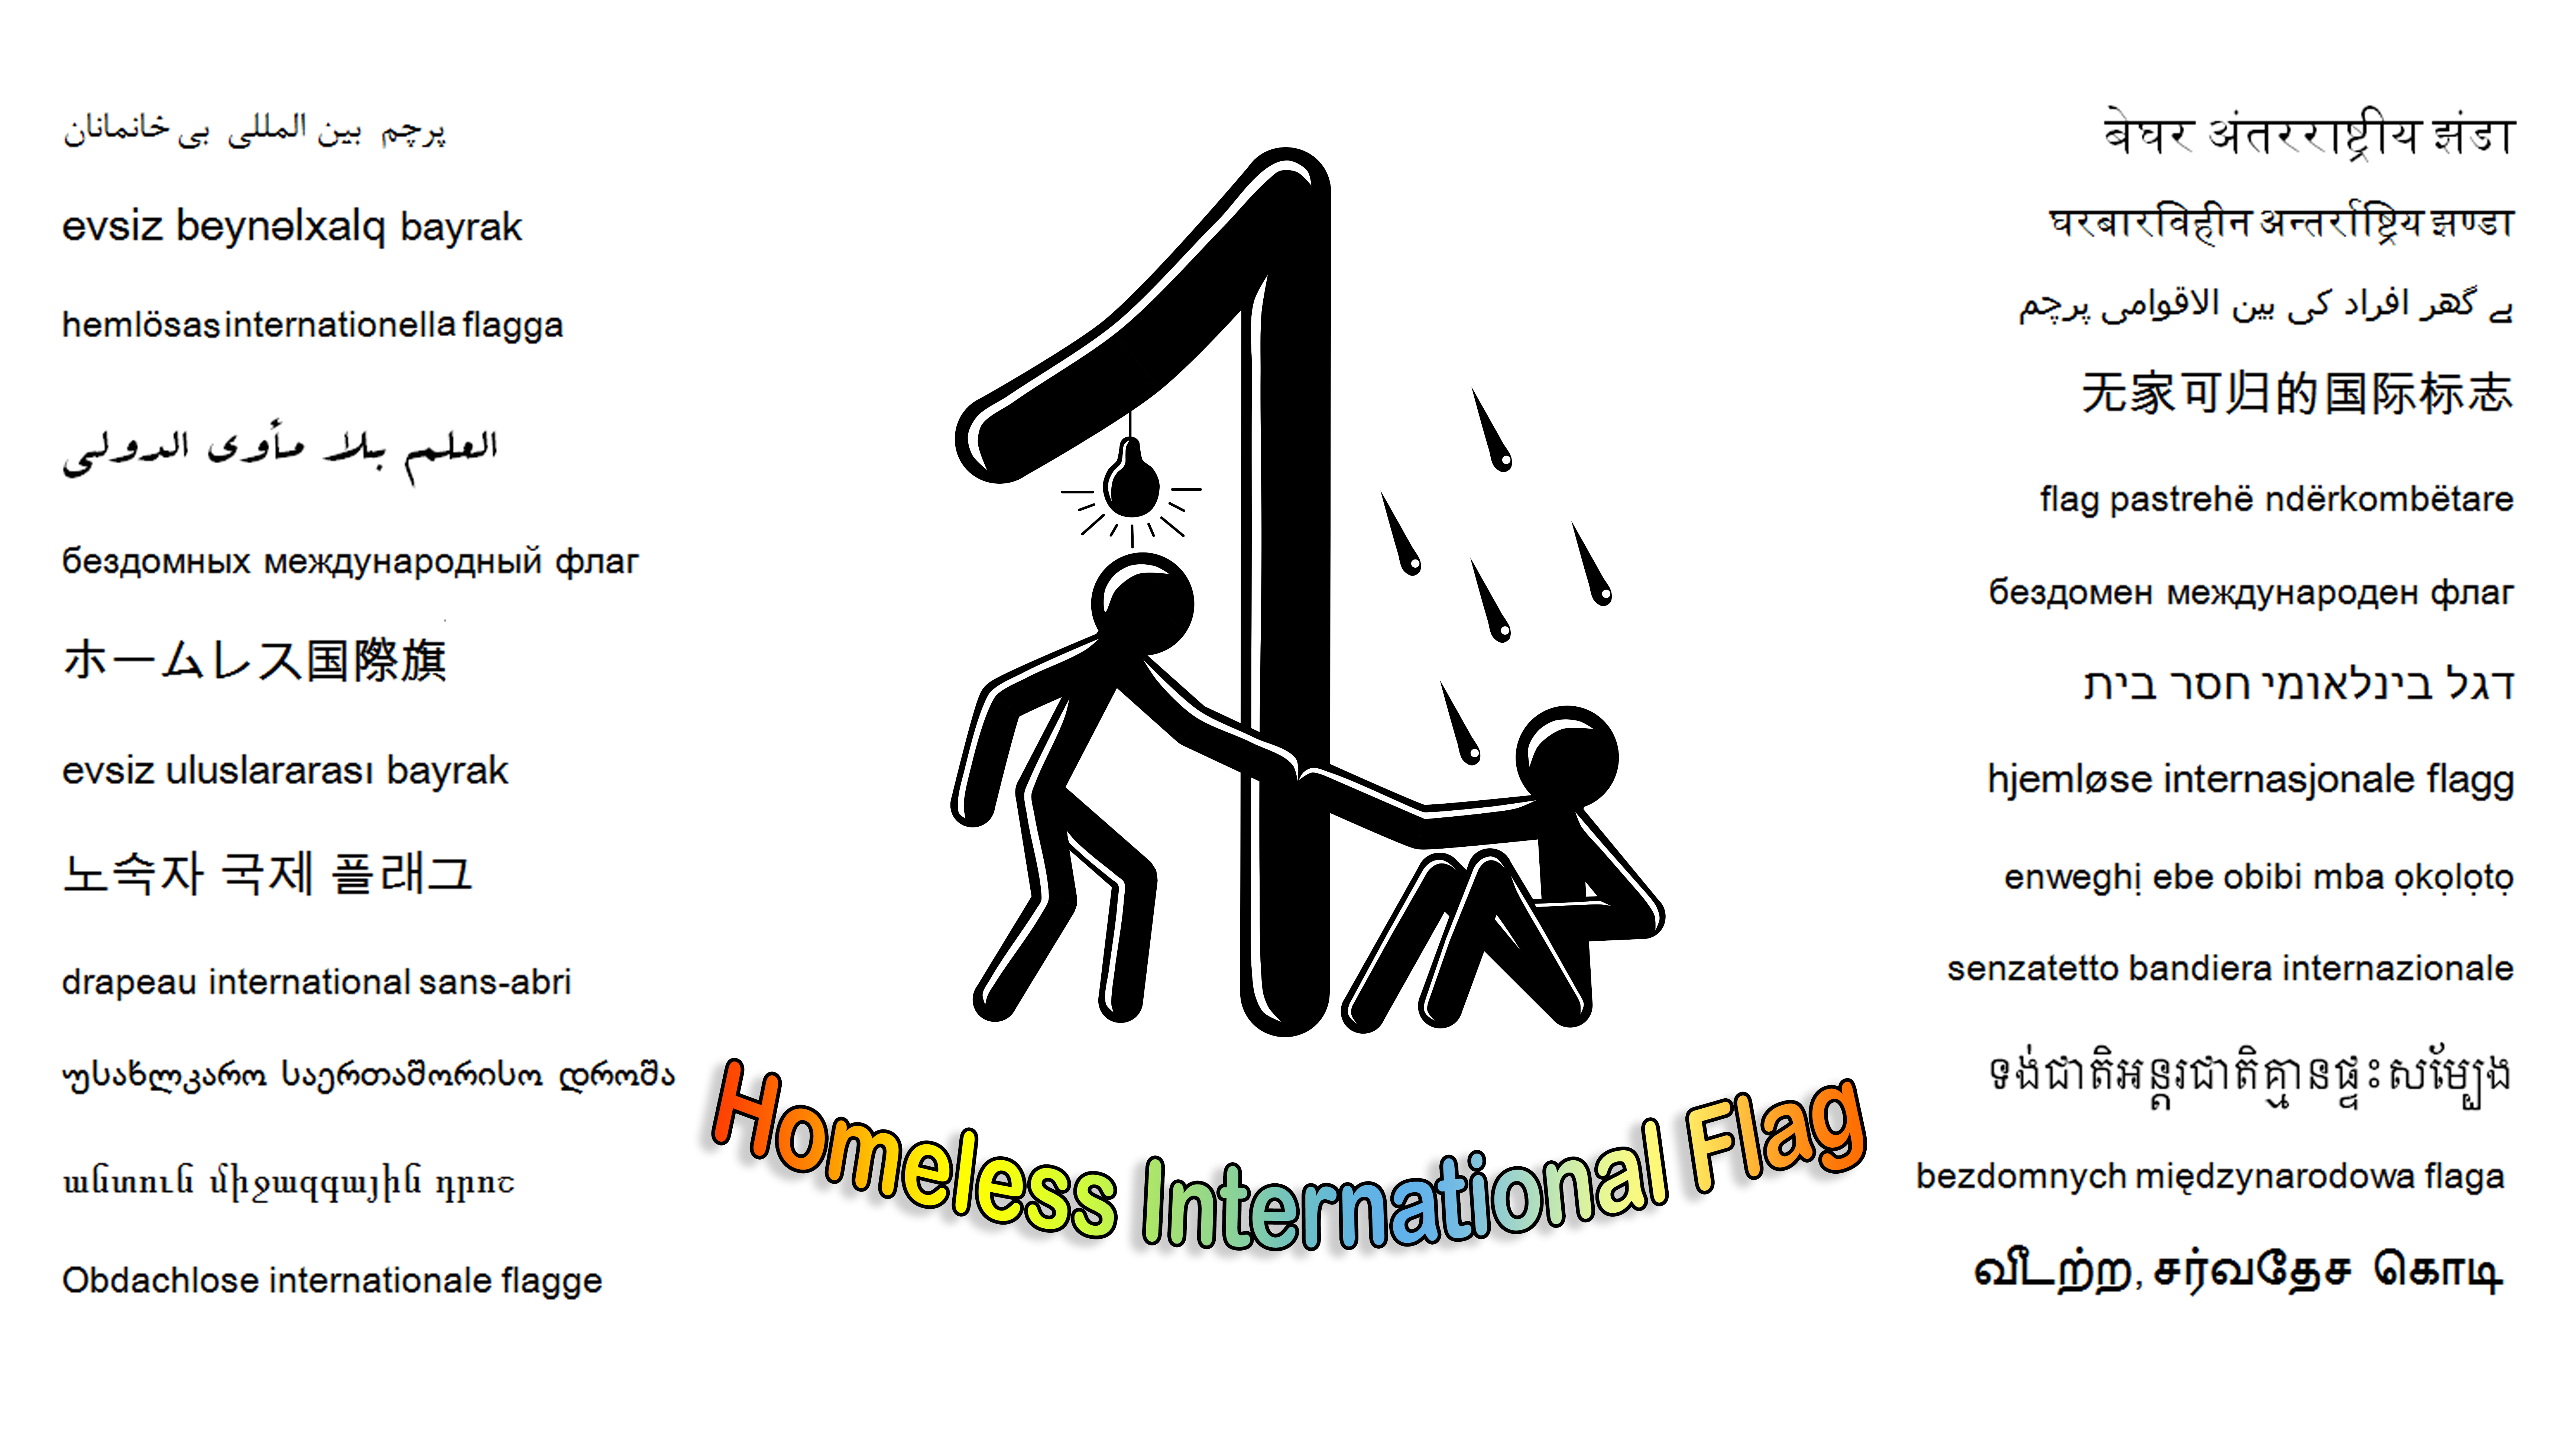 Homeless International Flag